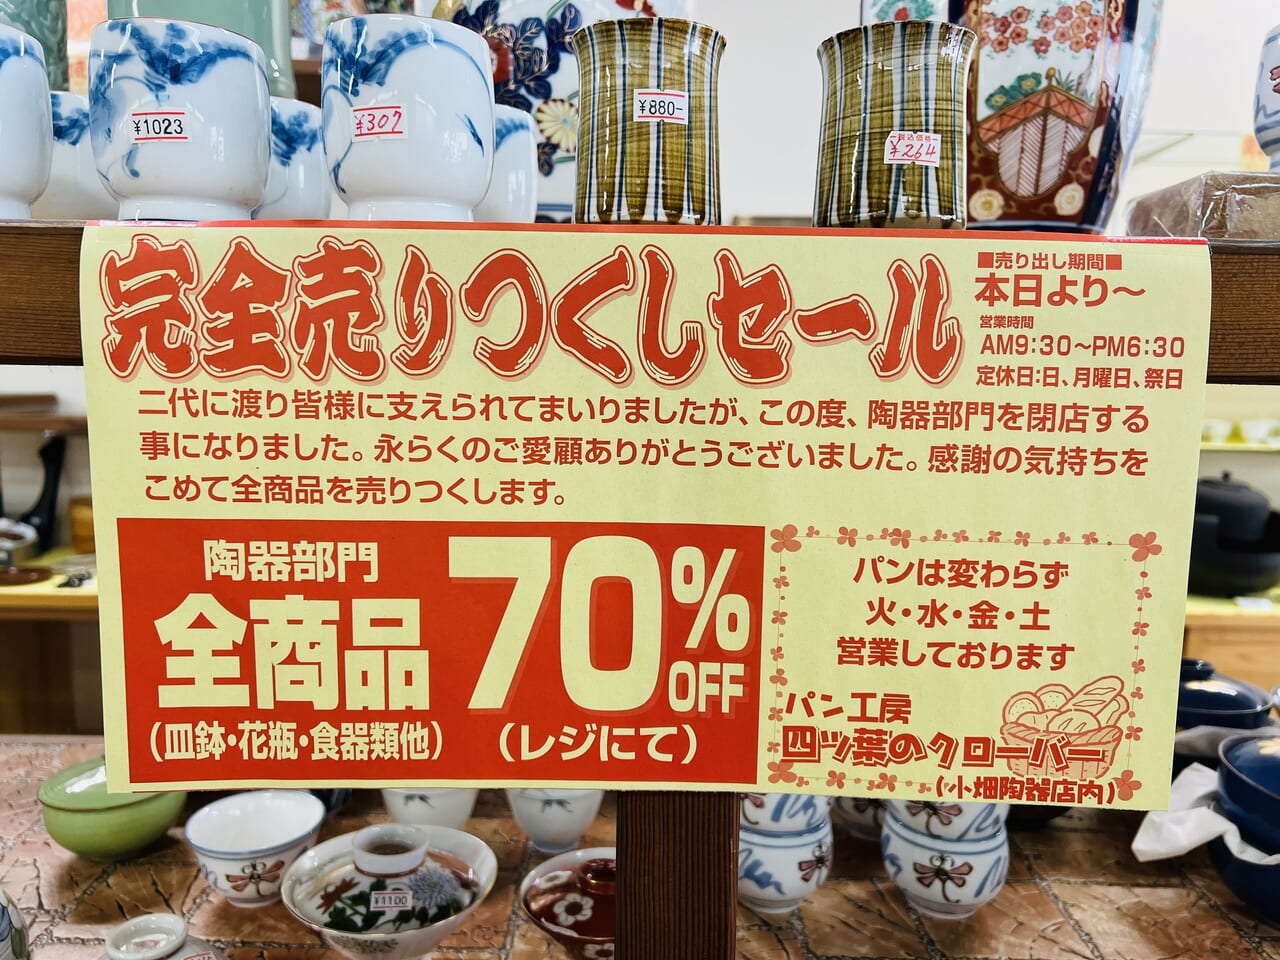 「小畑陶器店」の閉店セールのお知らせ